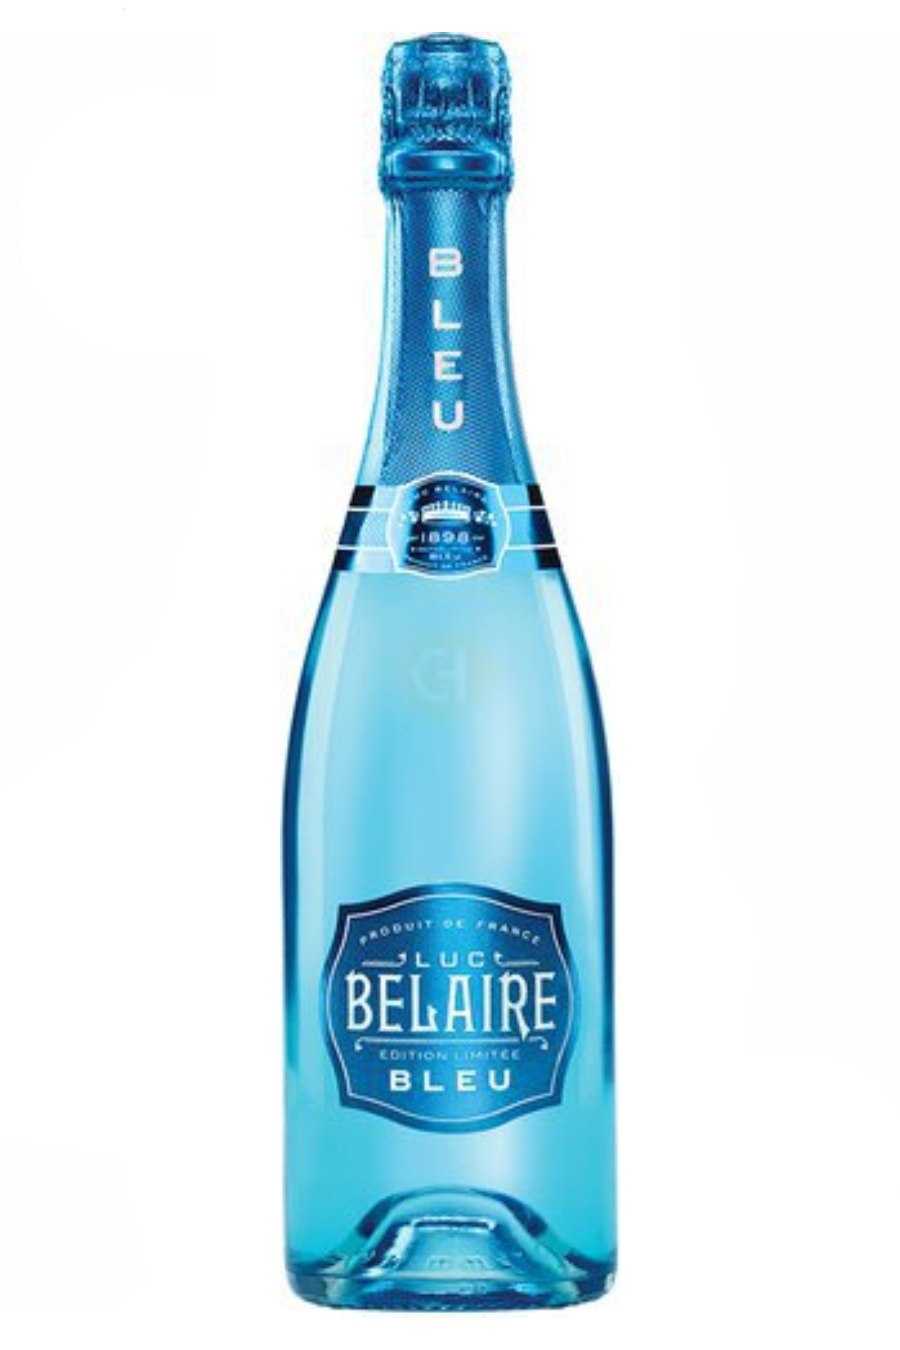 Luc Belaire Rare Luxe - 750 ml